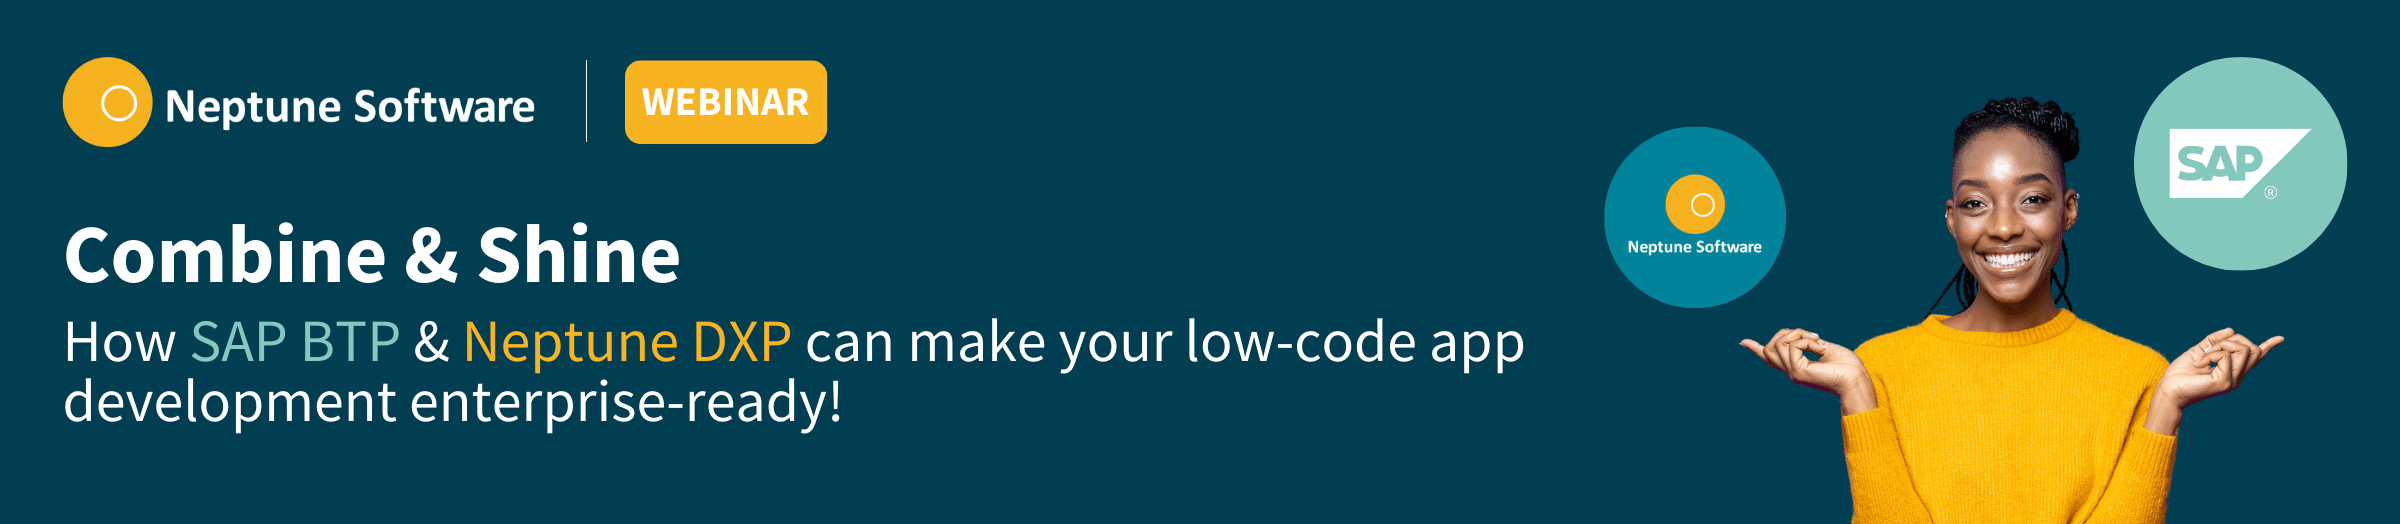 Neptune Software Low-Code App Development 